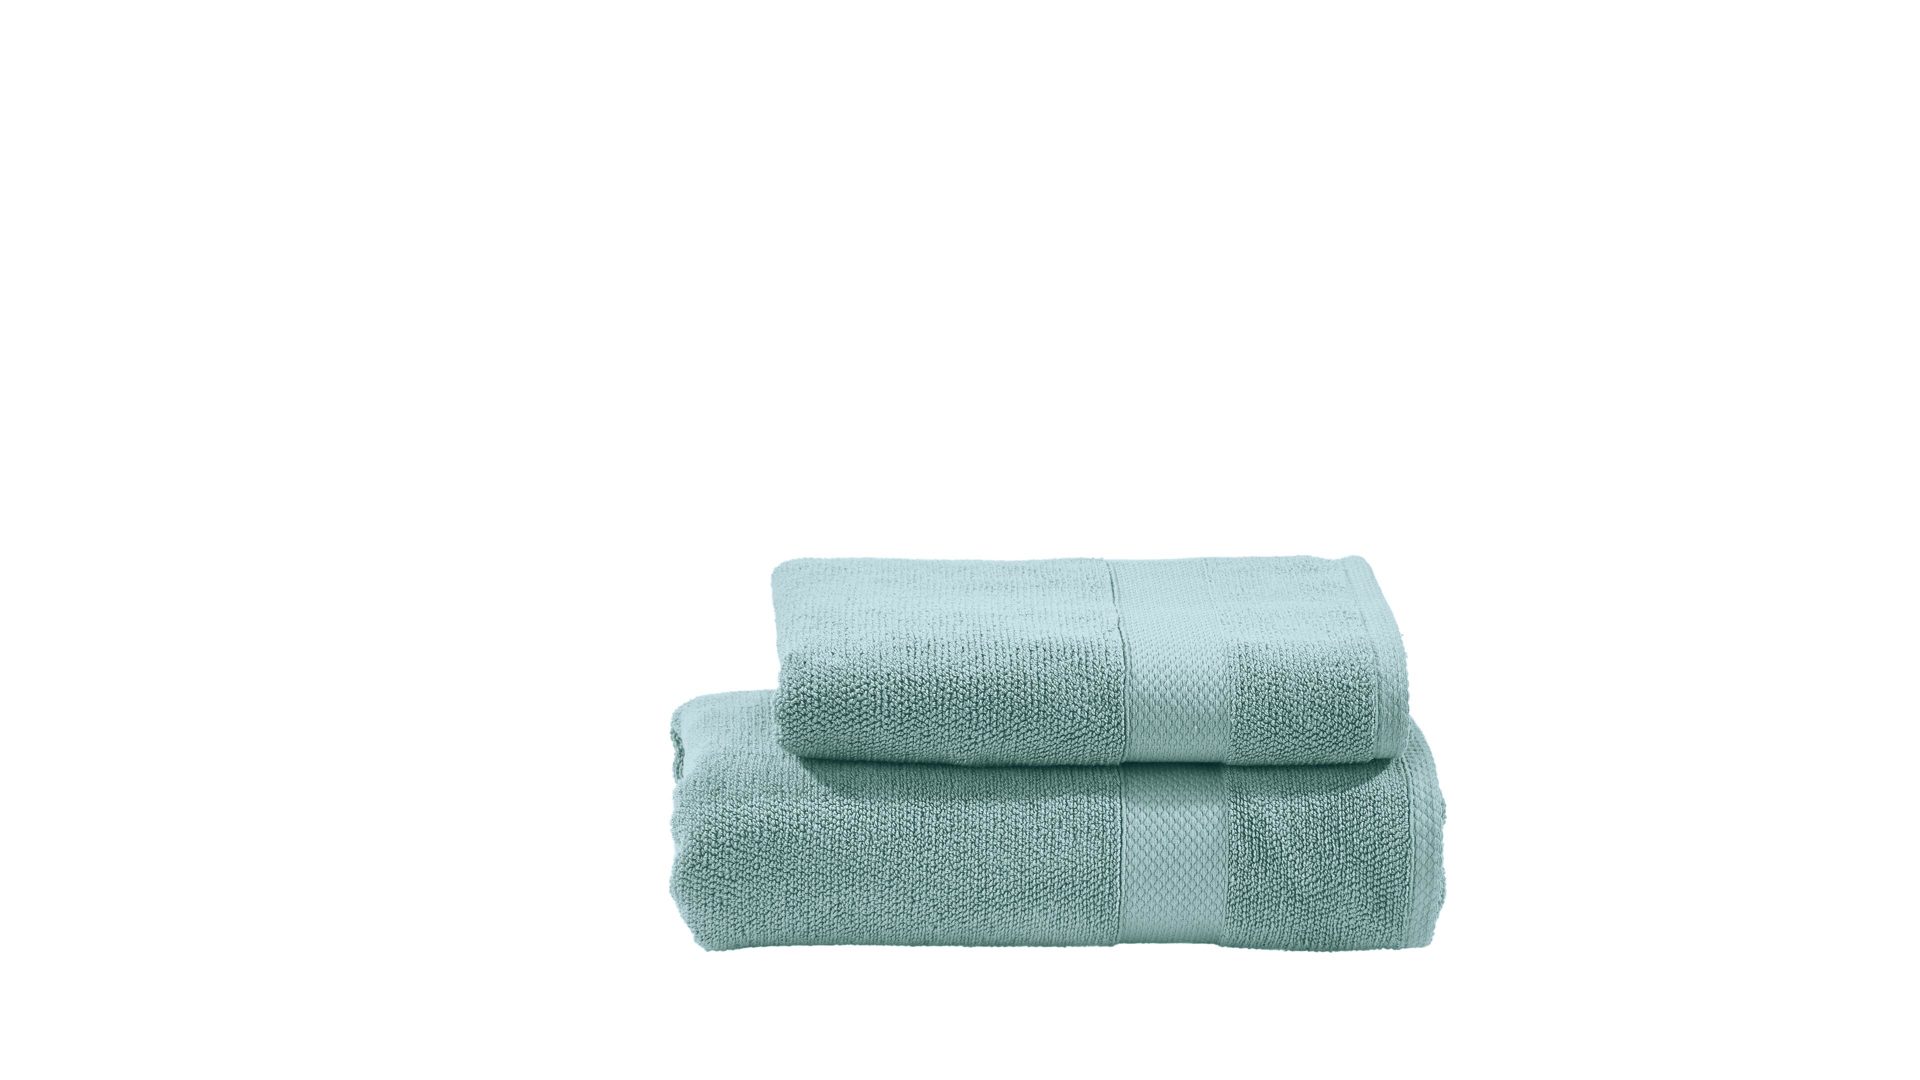 Hamamtuch Done.® be different aus Stoff in Blau DONE.® Handtuch-Set Deluxe für Ihre Heimtextilien blaue Baumwolle – zweiteilig